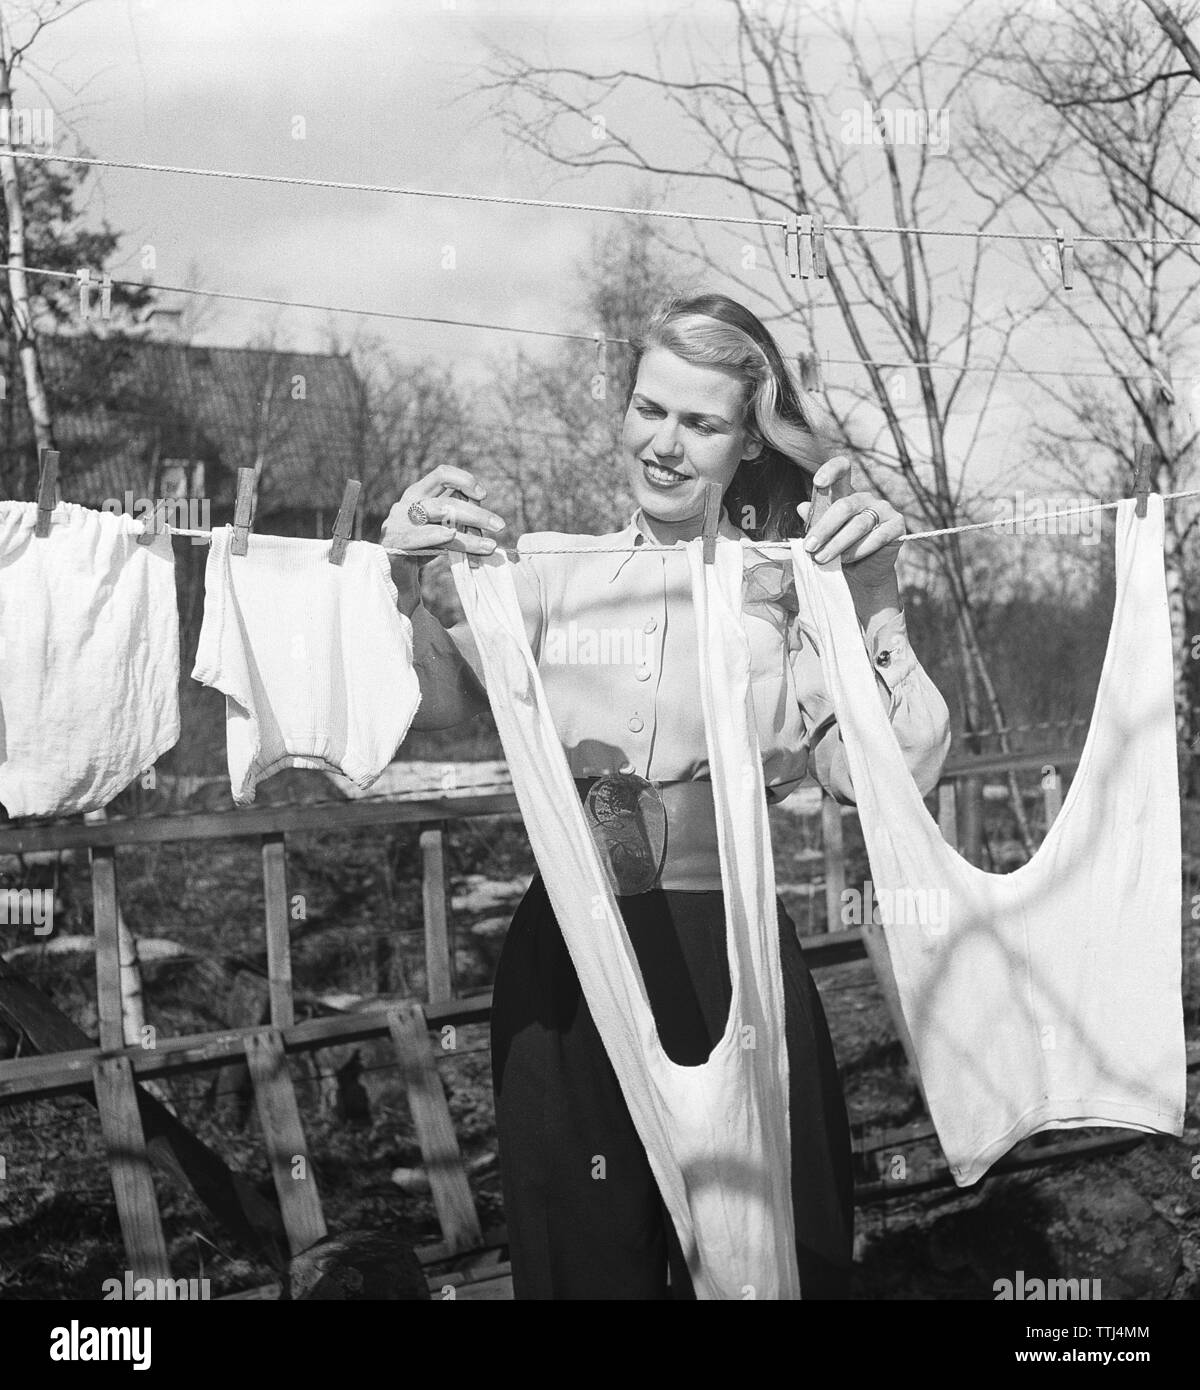 Faire la lessive dans les années 40. Une dame est dans le jardin d'accrocher le linge à sécher. La Suède 1947 Kristoffersson ref AB10-5. Suède 1951 Banque D'Images